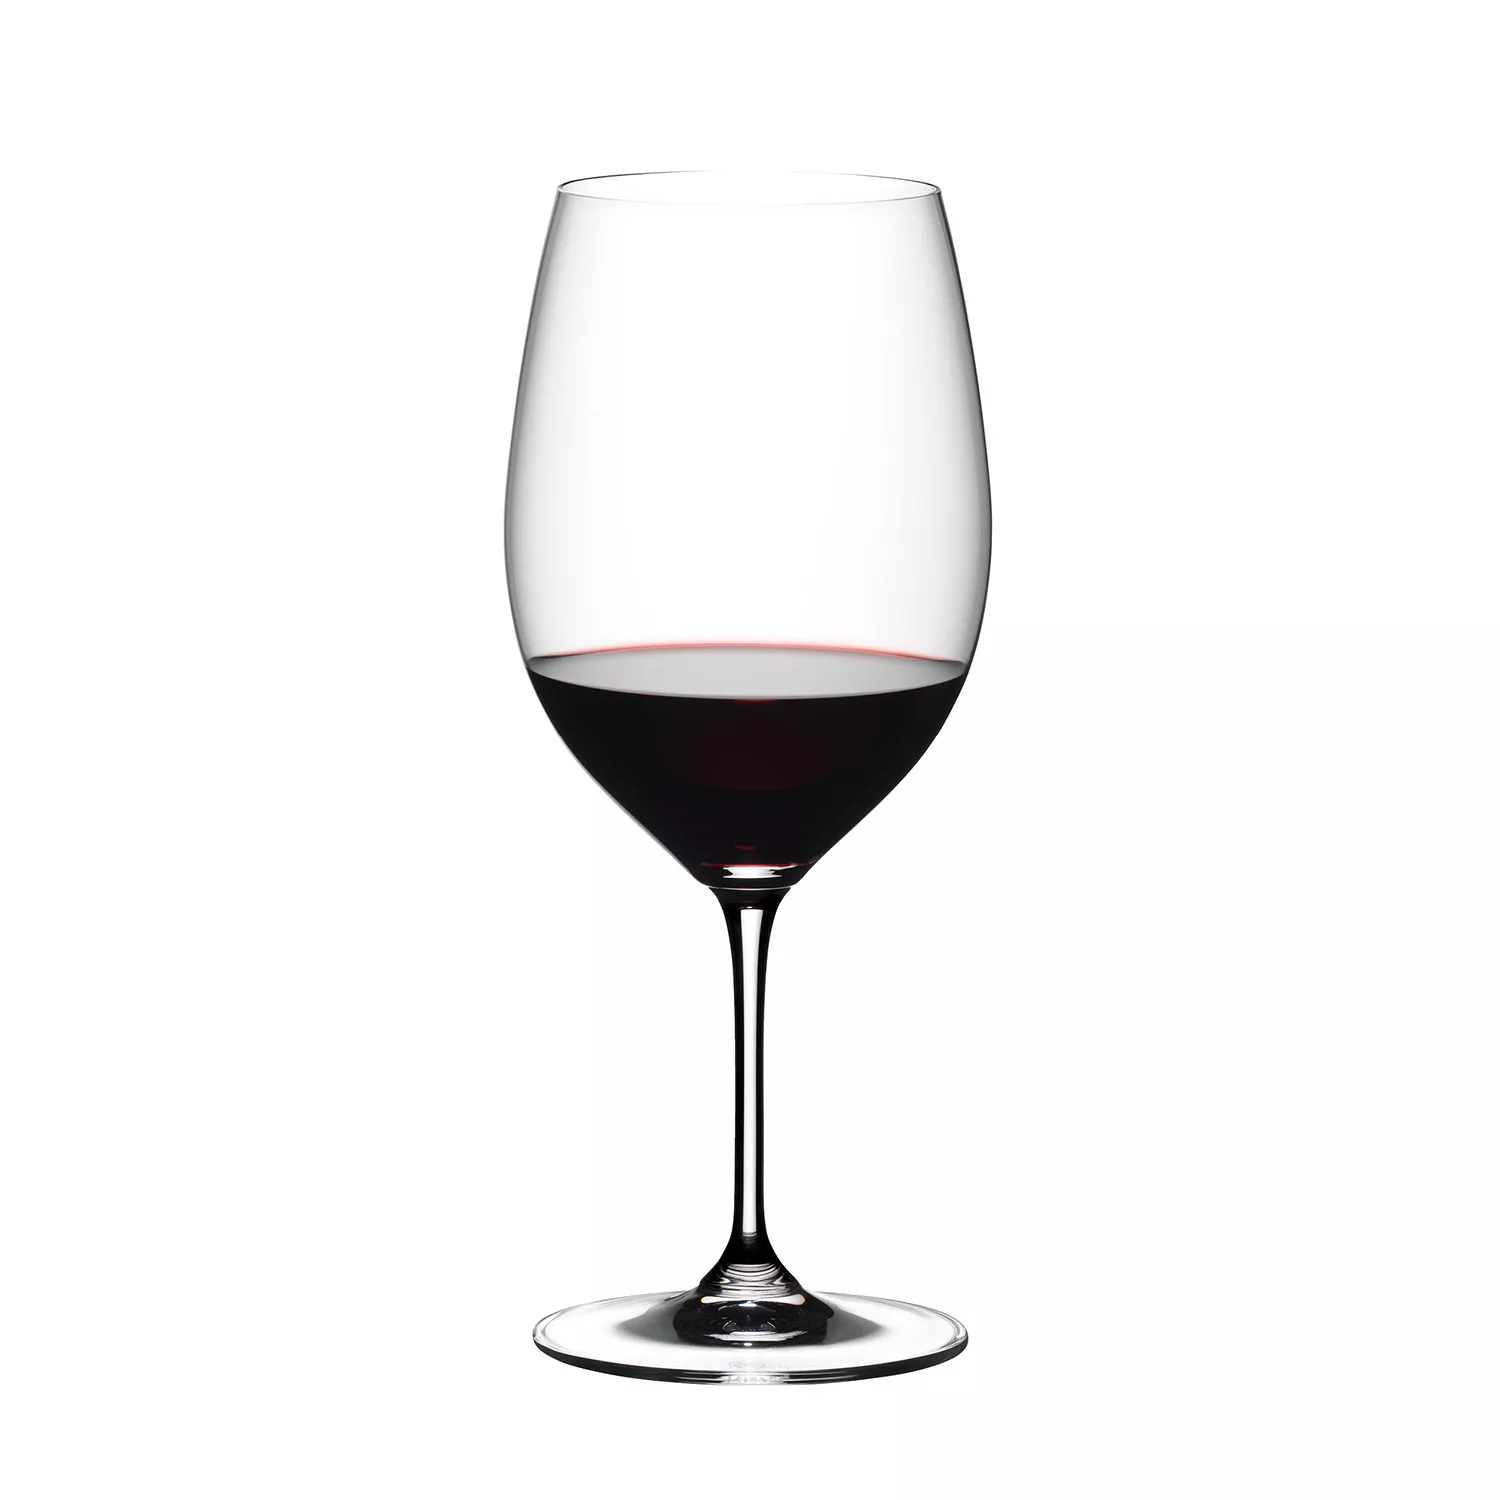 RIEDEL Vinum Cabernet/Merlot (Bordeaux) Wine Glass